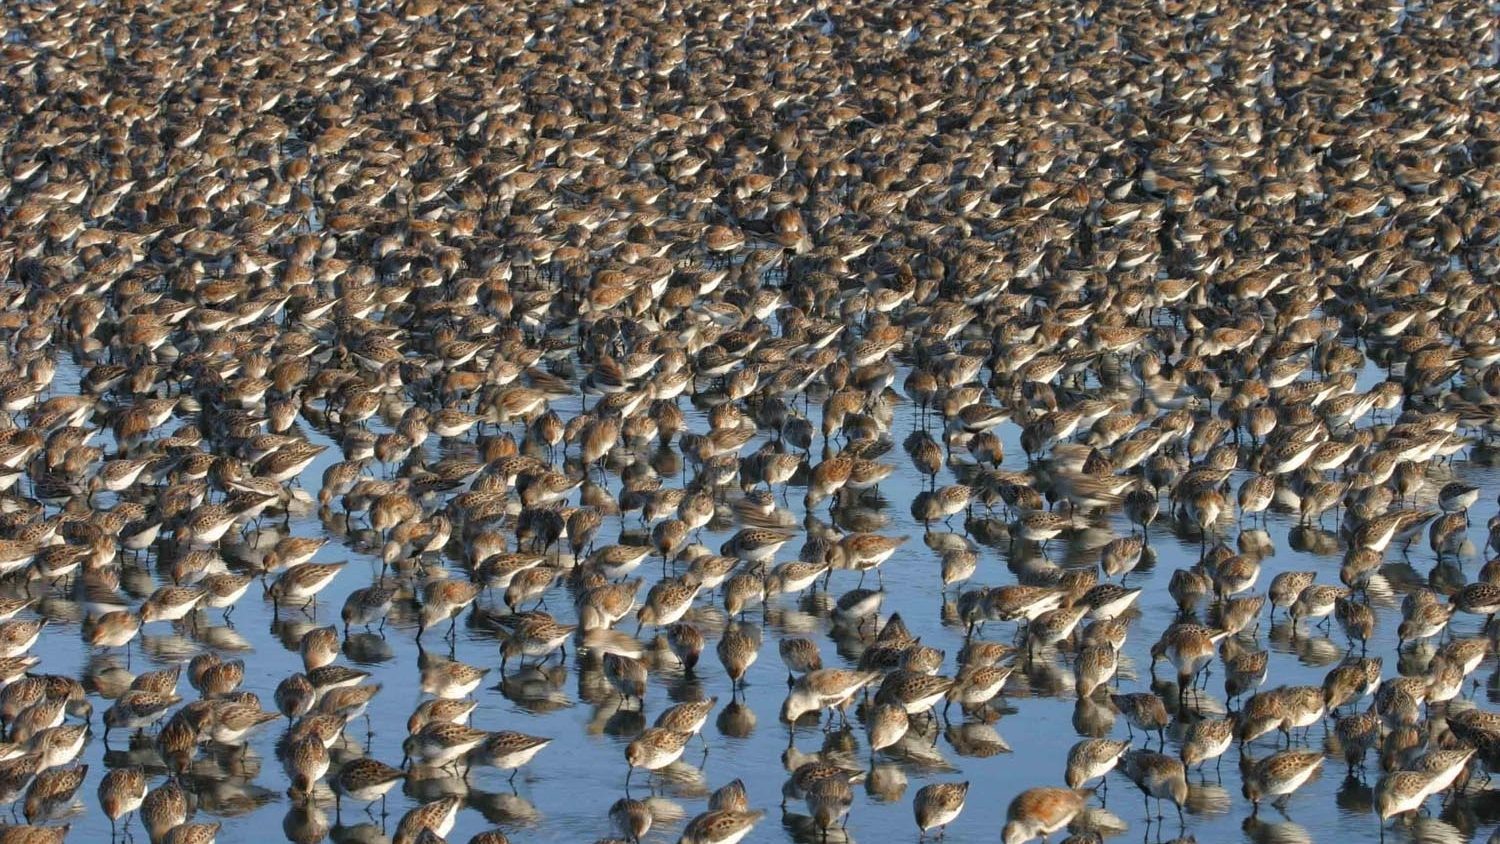 dense flock of birds